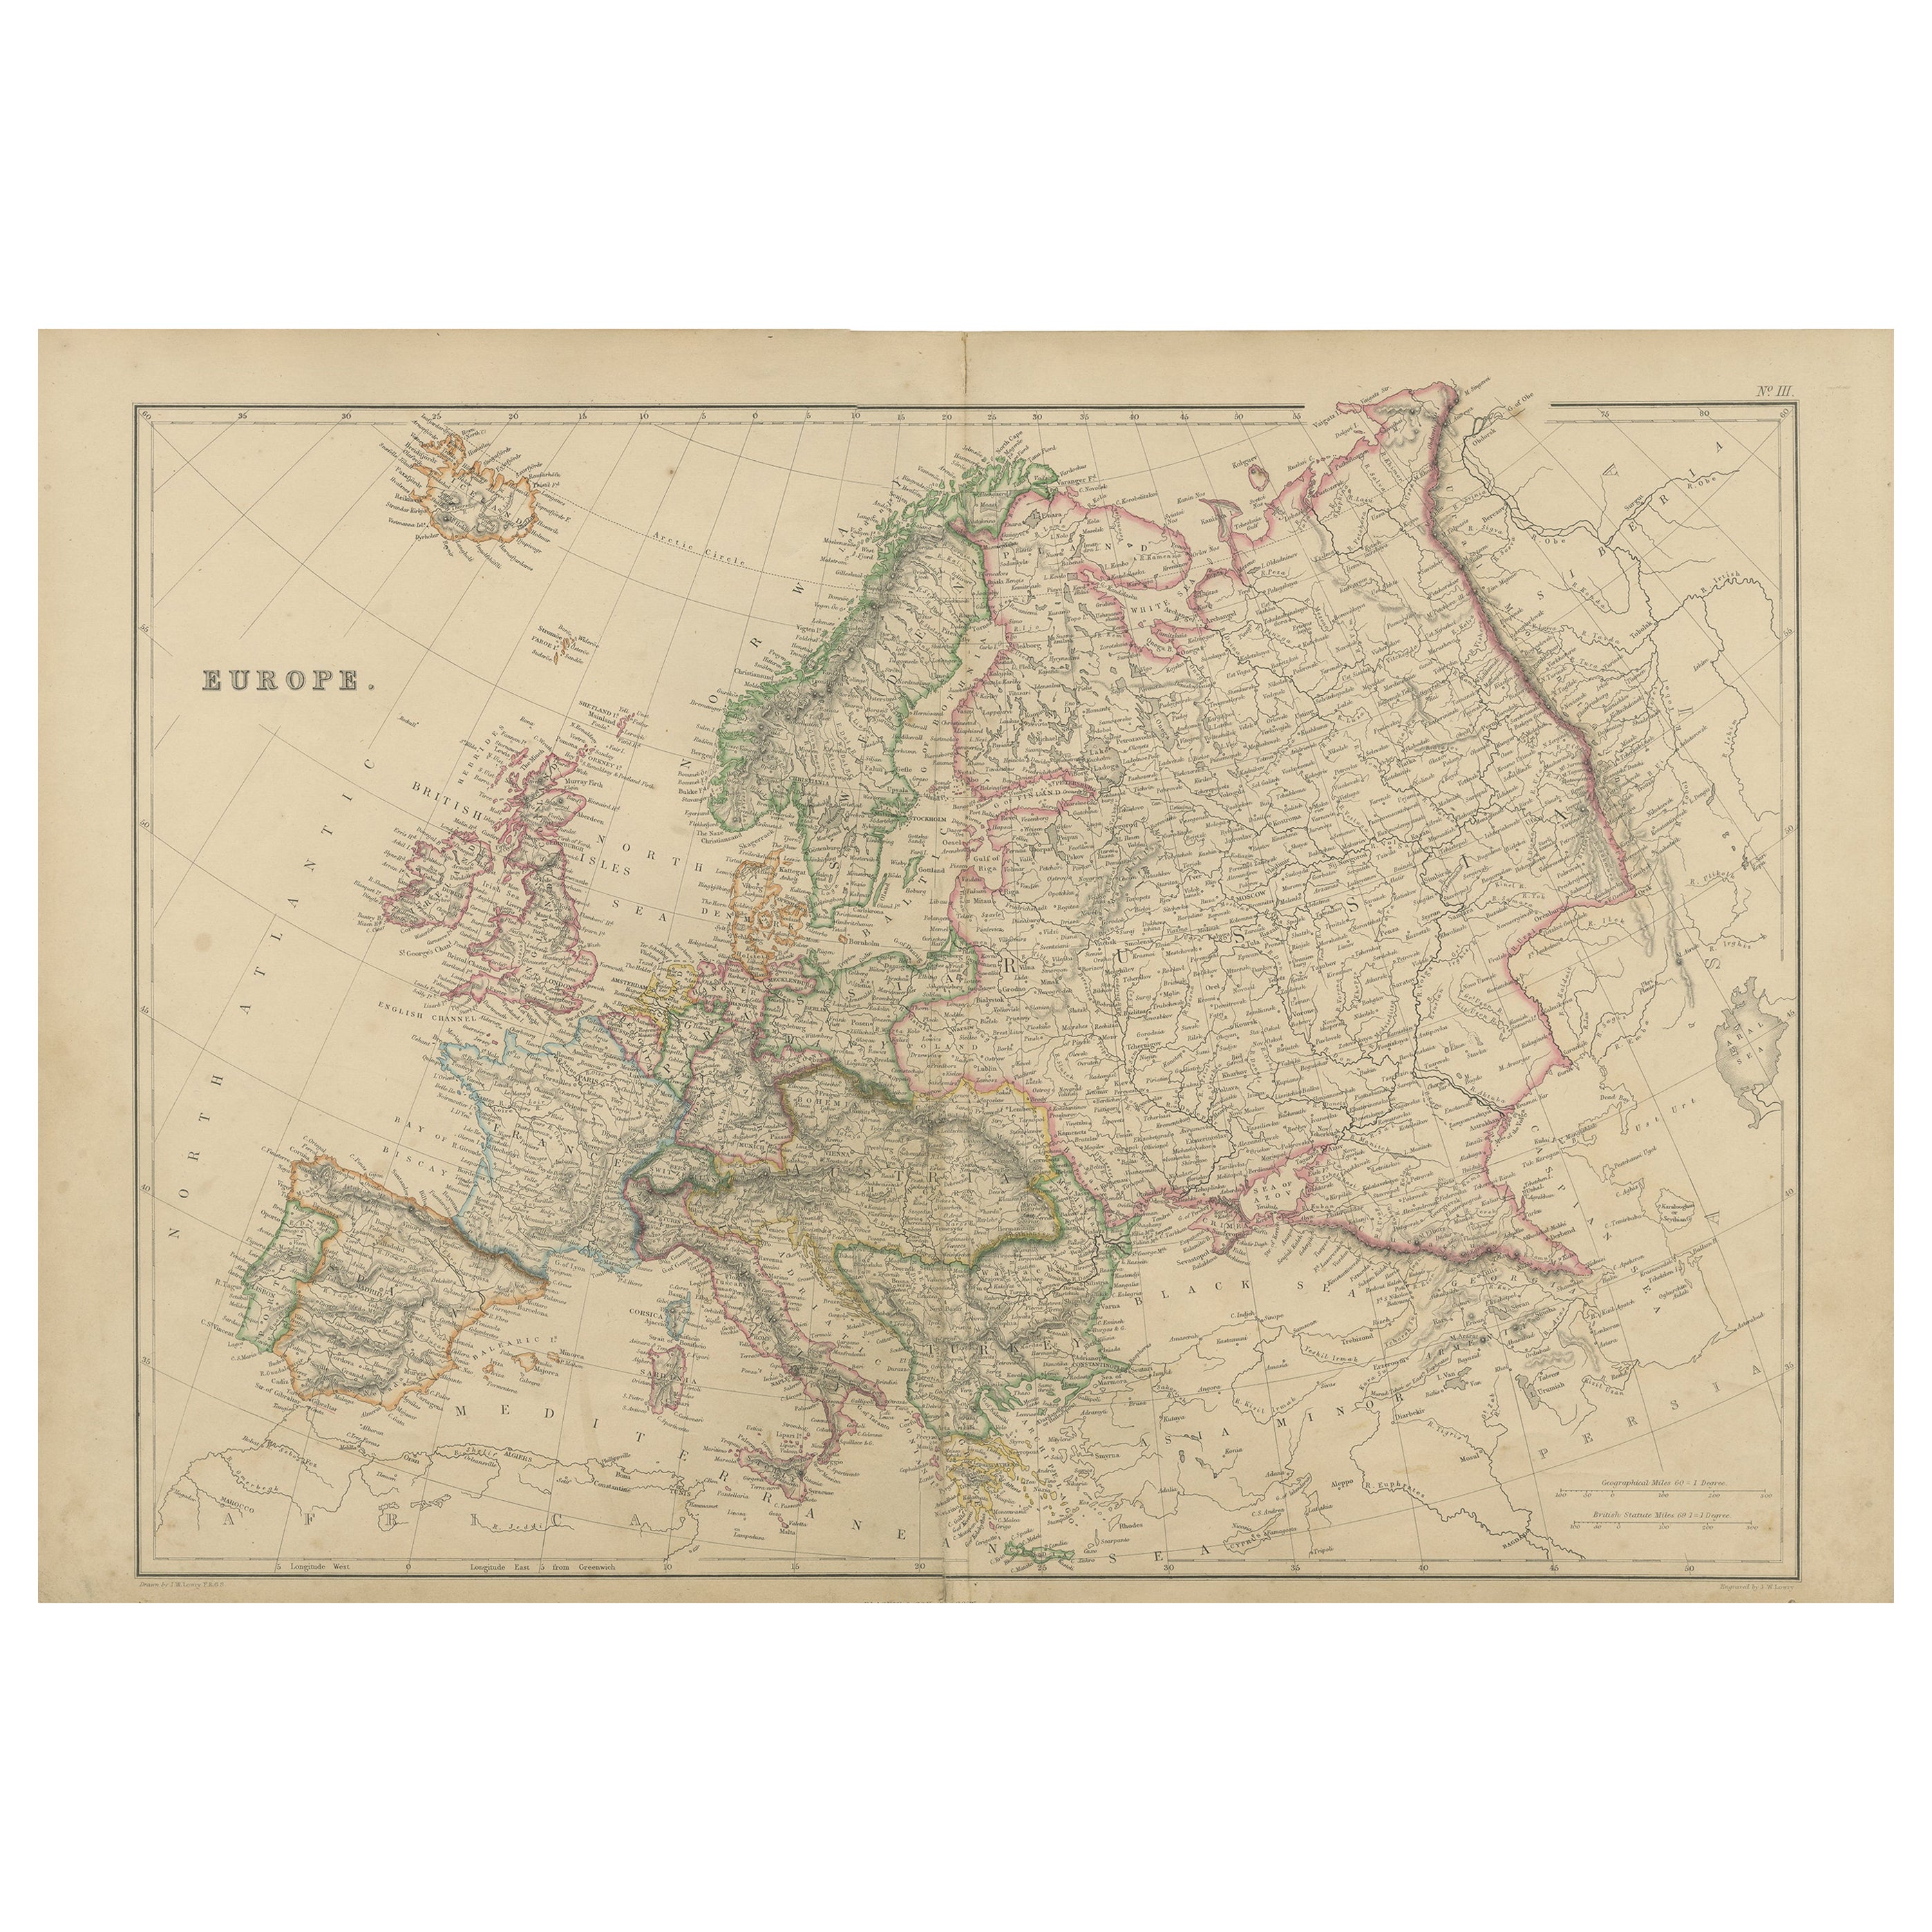 Antike Europakarte von W. G. Blackie, 1859